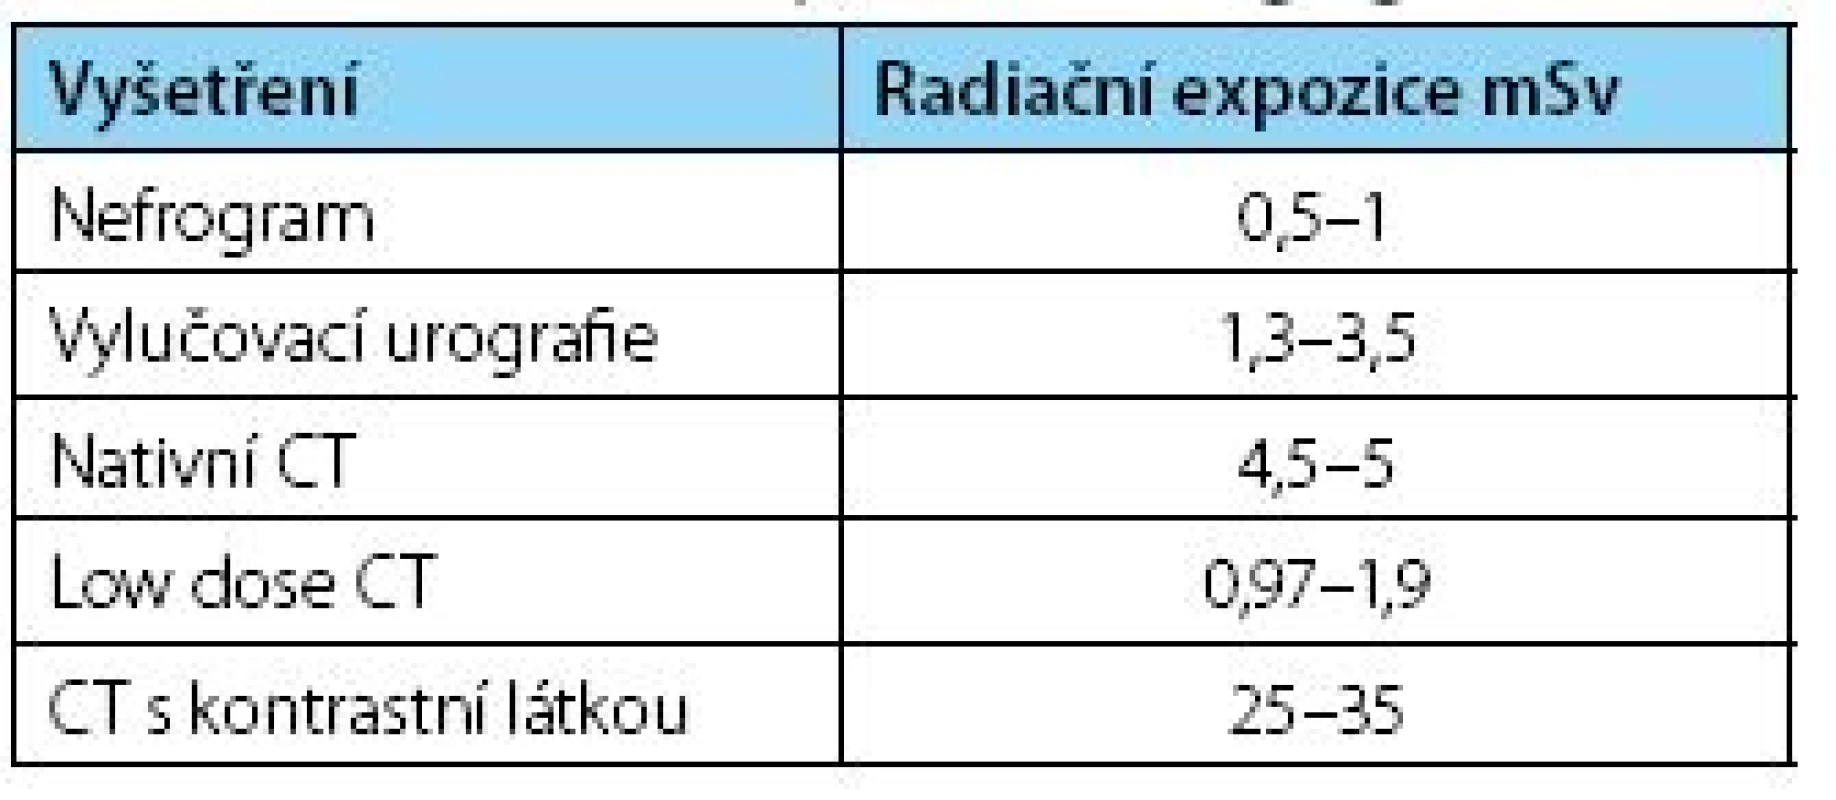 Radiační zátěž zobrazovacích vyšetření
Table 1. Radiation exposure of imaging modalities